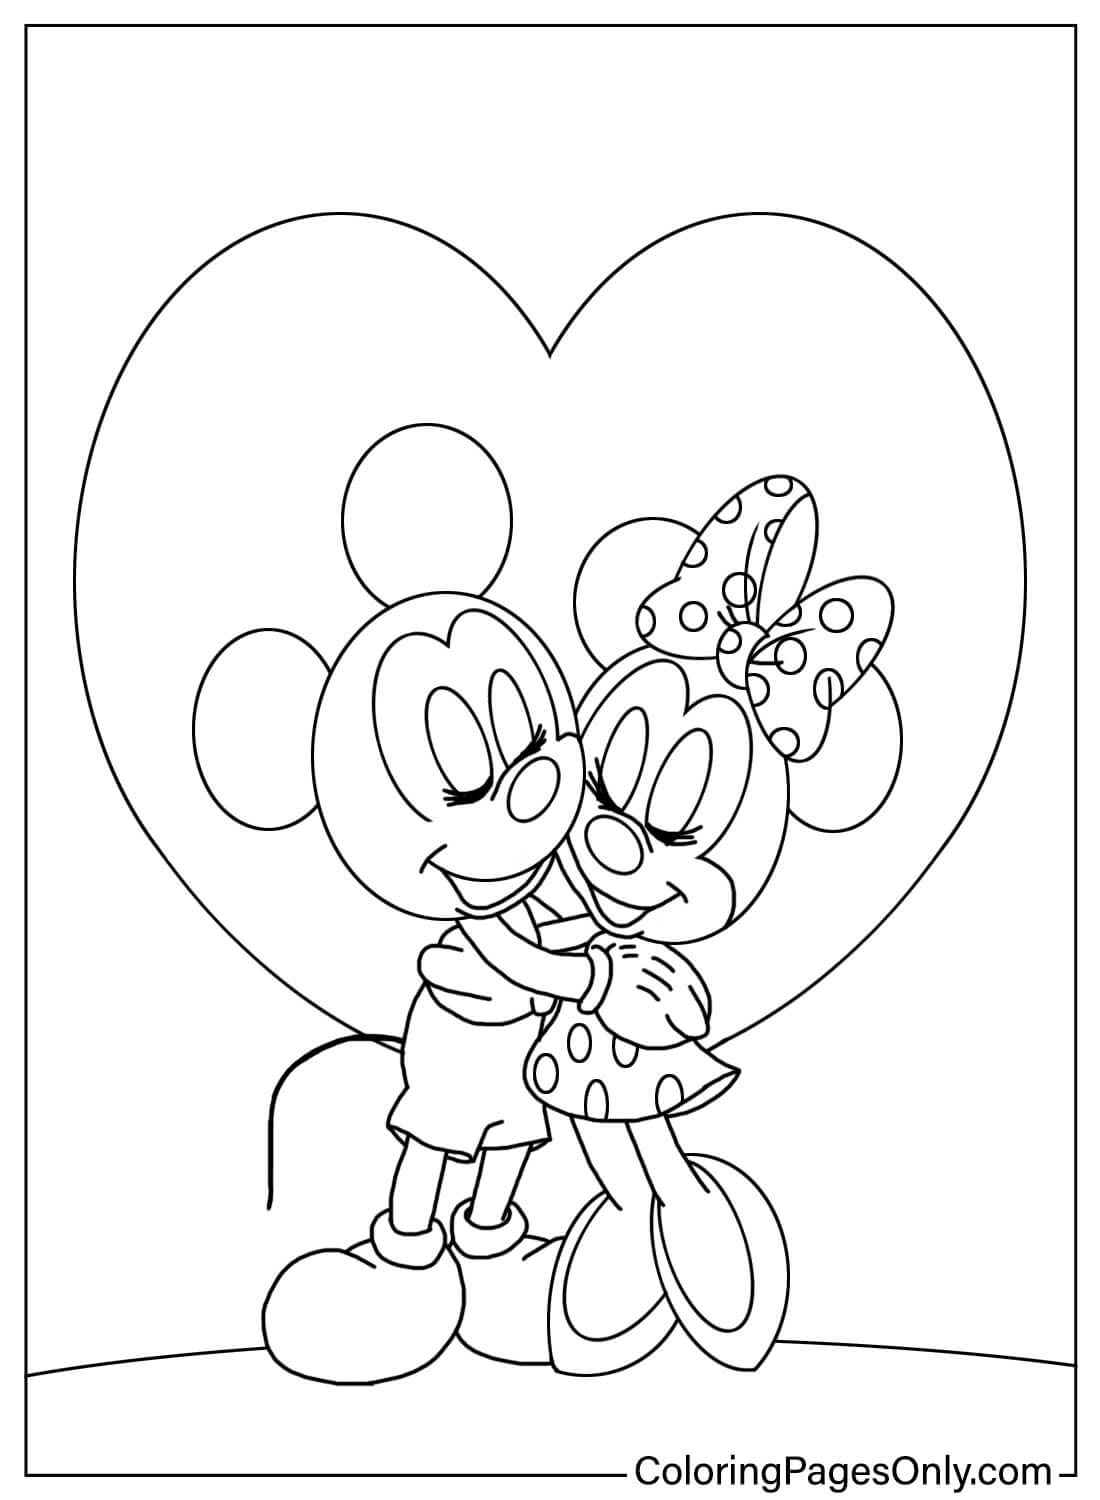 Página para colorear de Mickey y Minnie de Minnie Mouse